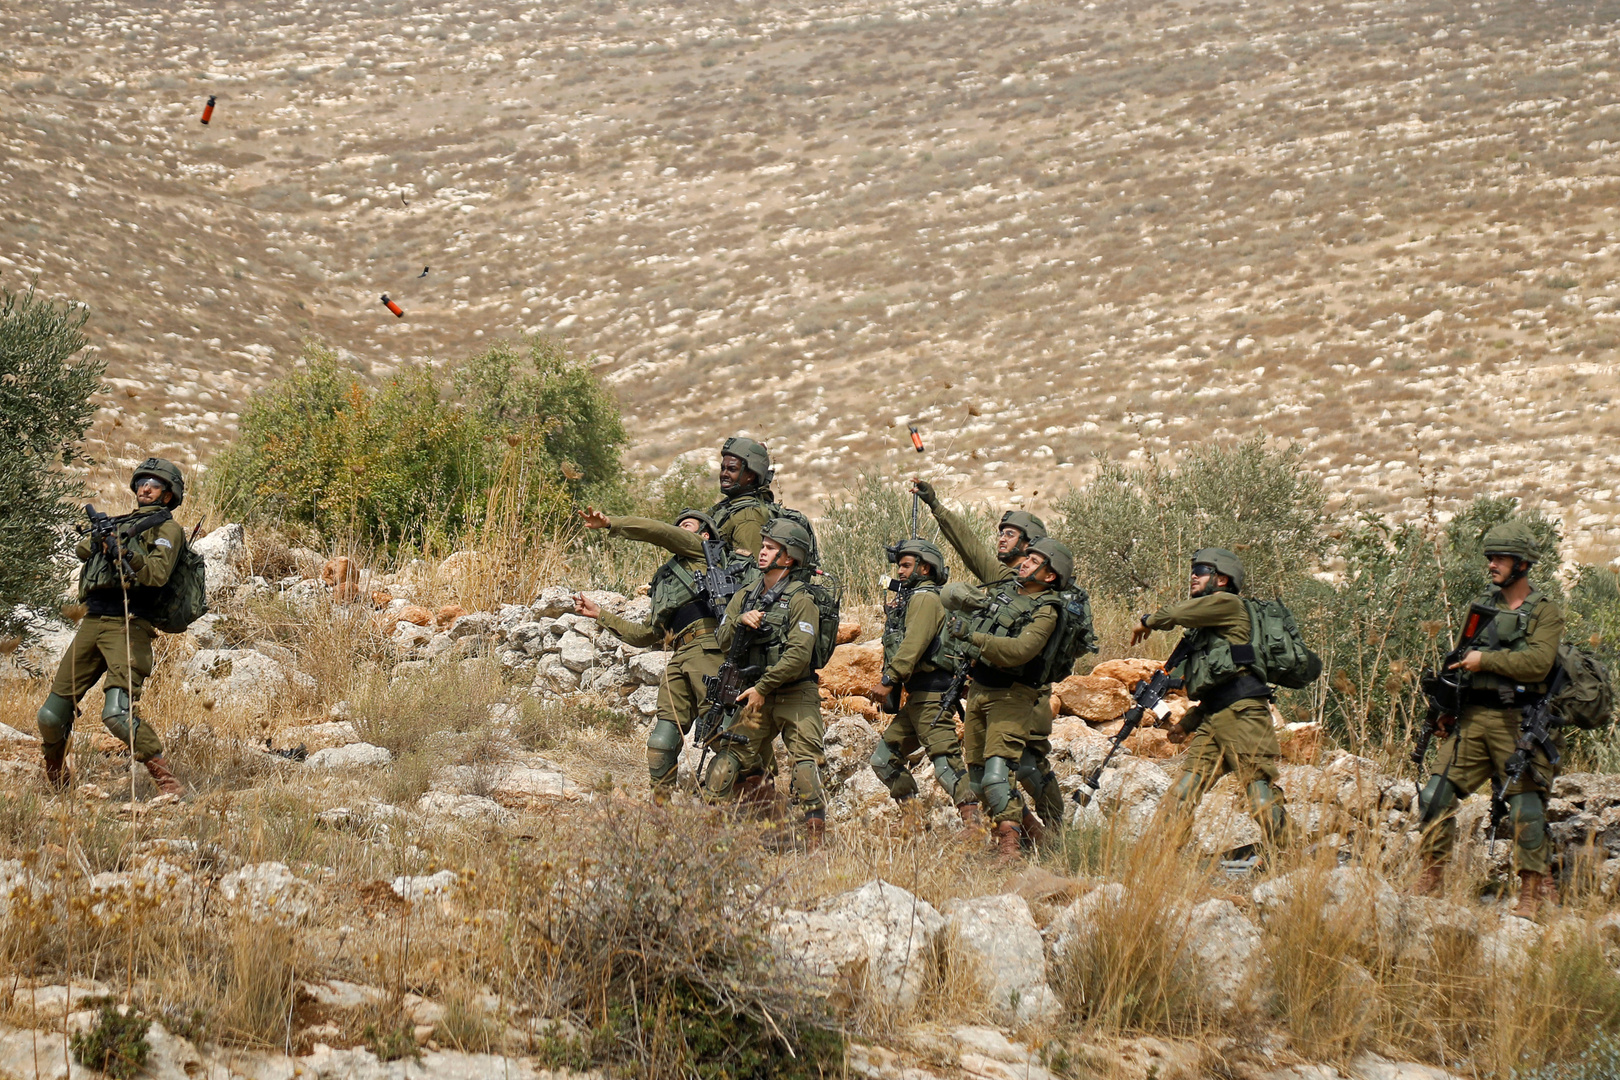 وسائل إعلام إسرائيلية: اعتقال 3 فلسطينيين بزعم التسلل لقاعدة عسكرية وسرقة ذخيرة